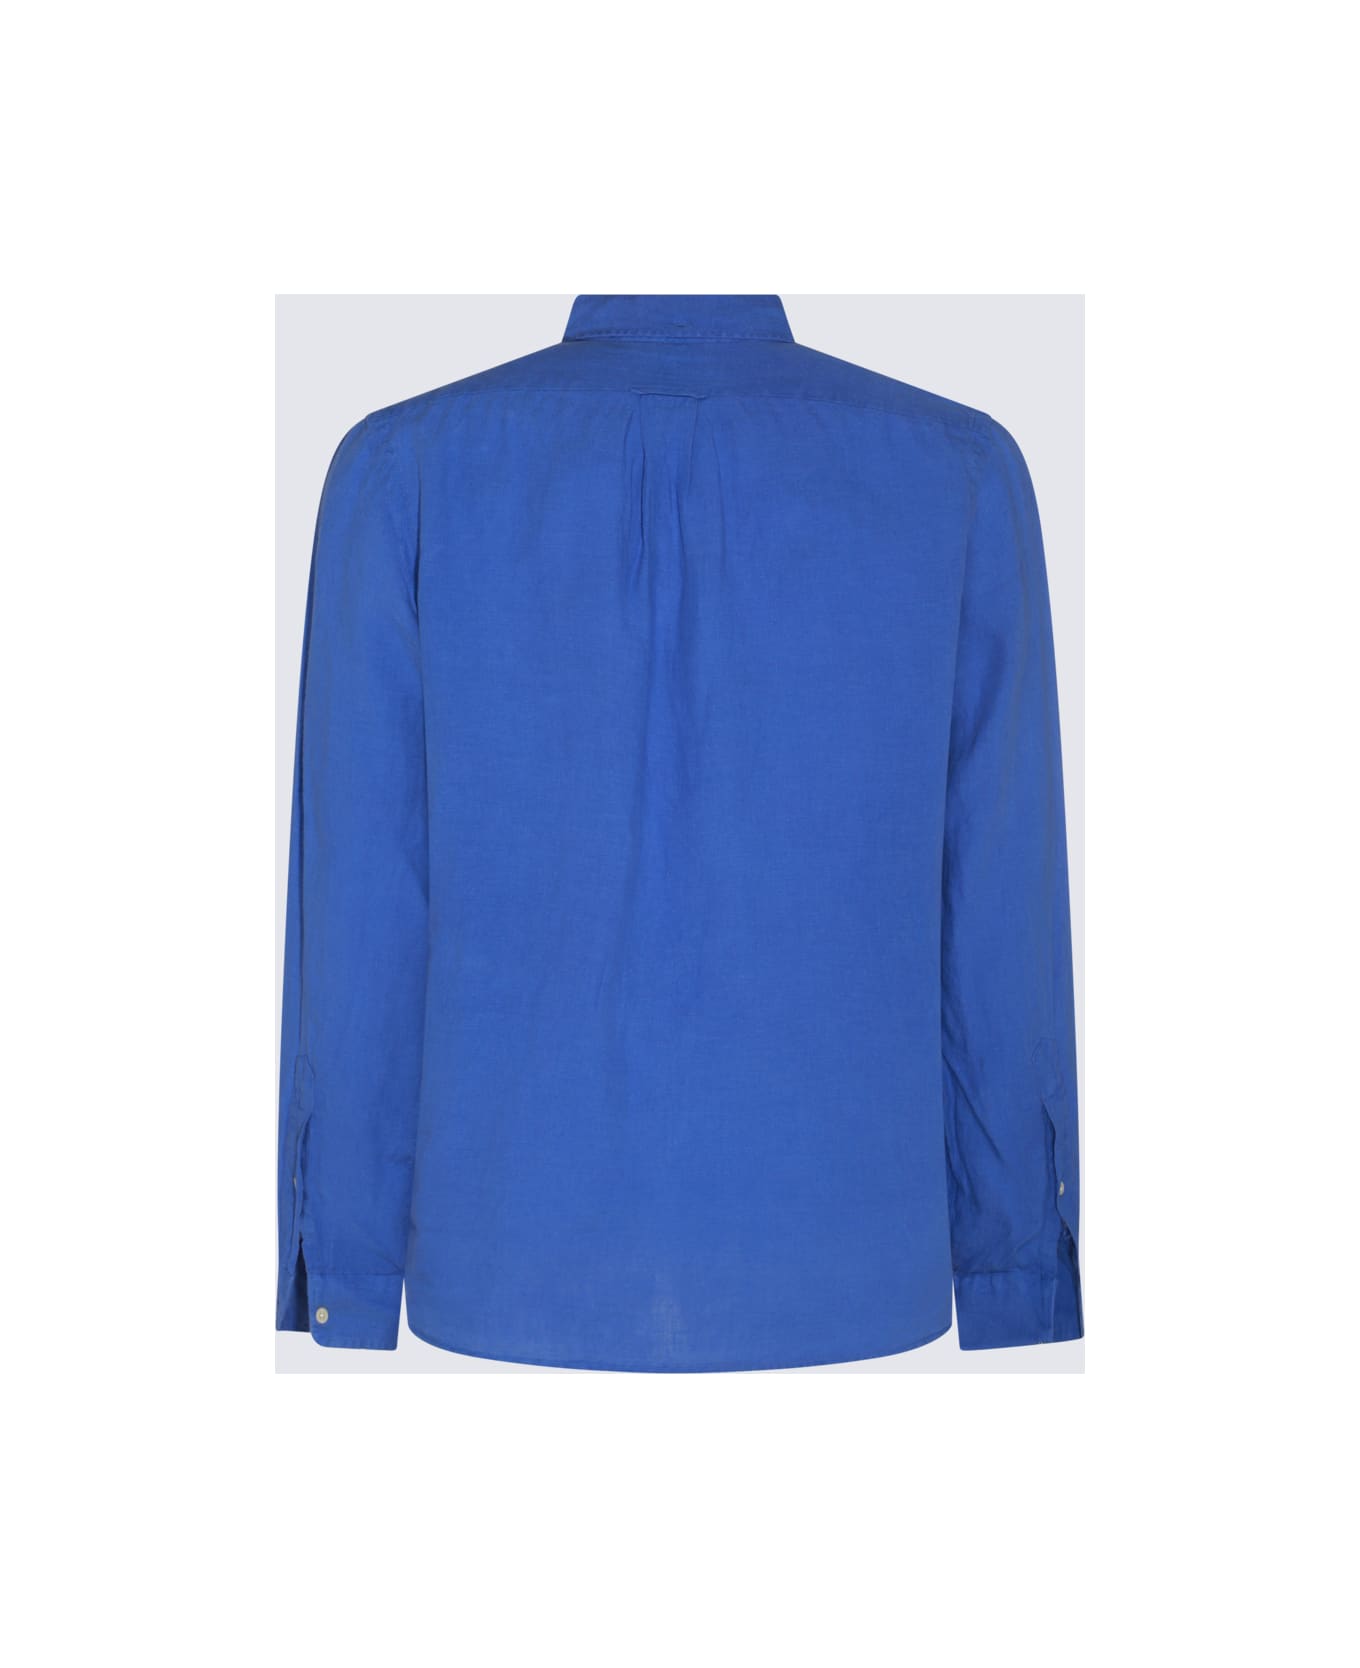 Polo Ralph Lauren Blue Cotton Shirt - SUMMER ROYAL シャツ